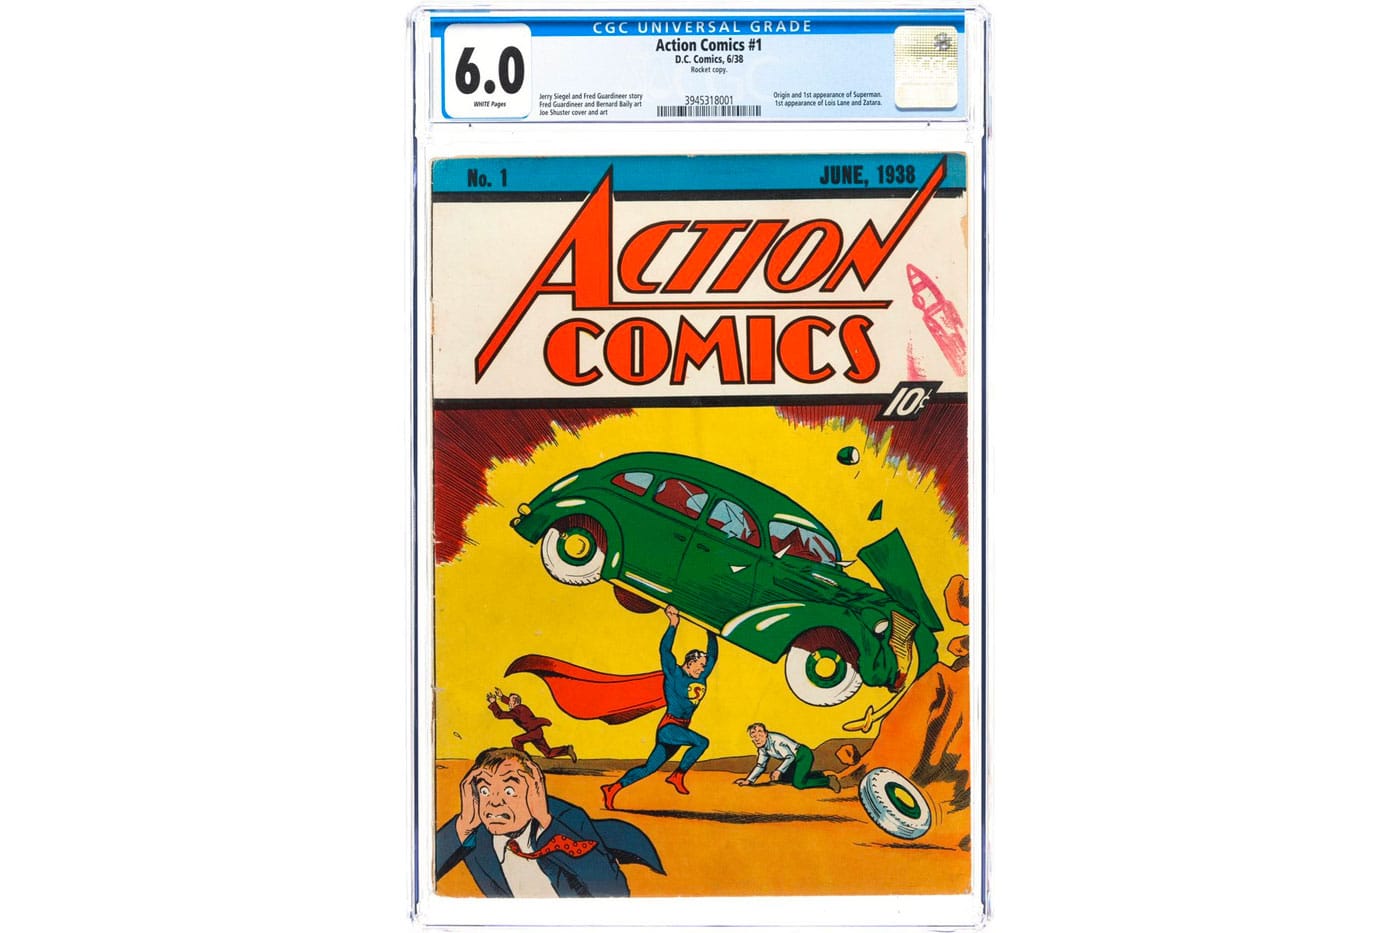 Neuware new Action Comics 1 Nr 1004 Superman in Action Comics, 2018 Vol 